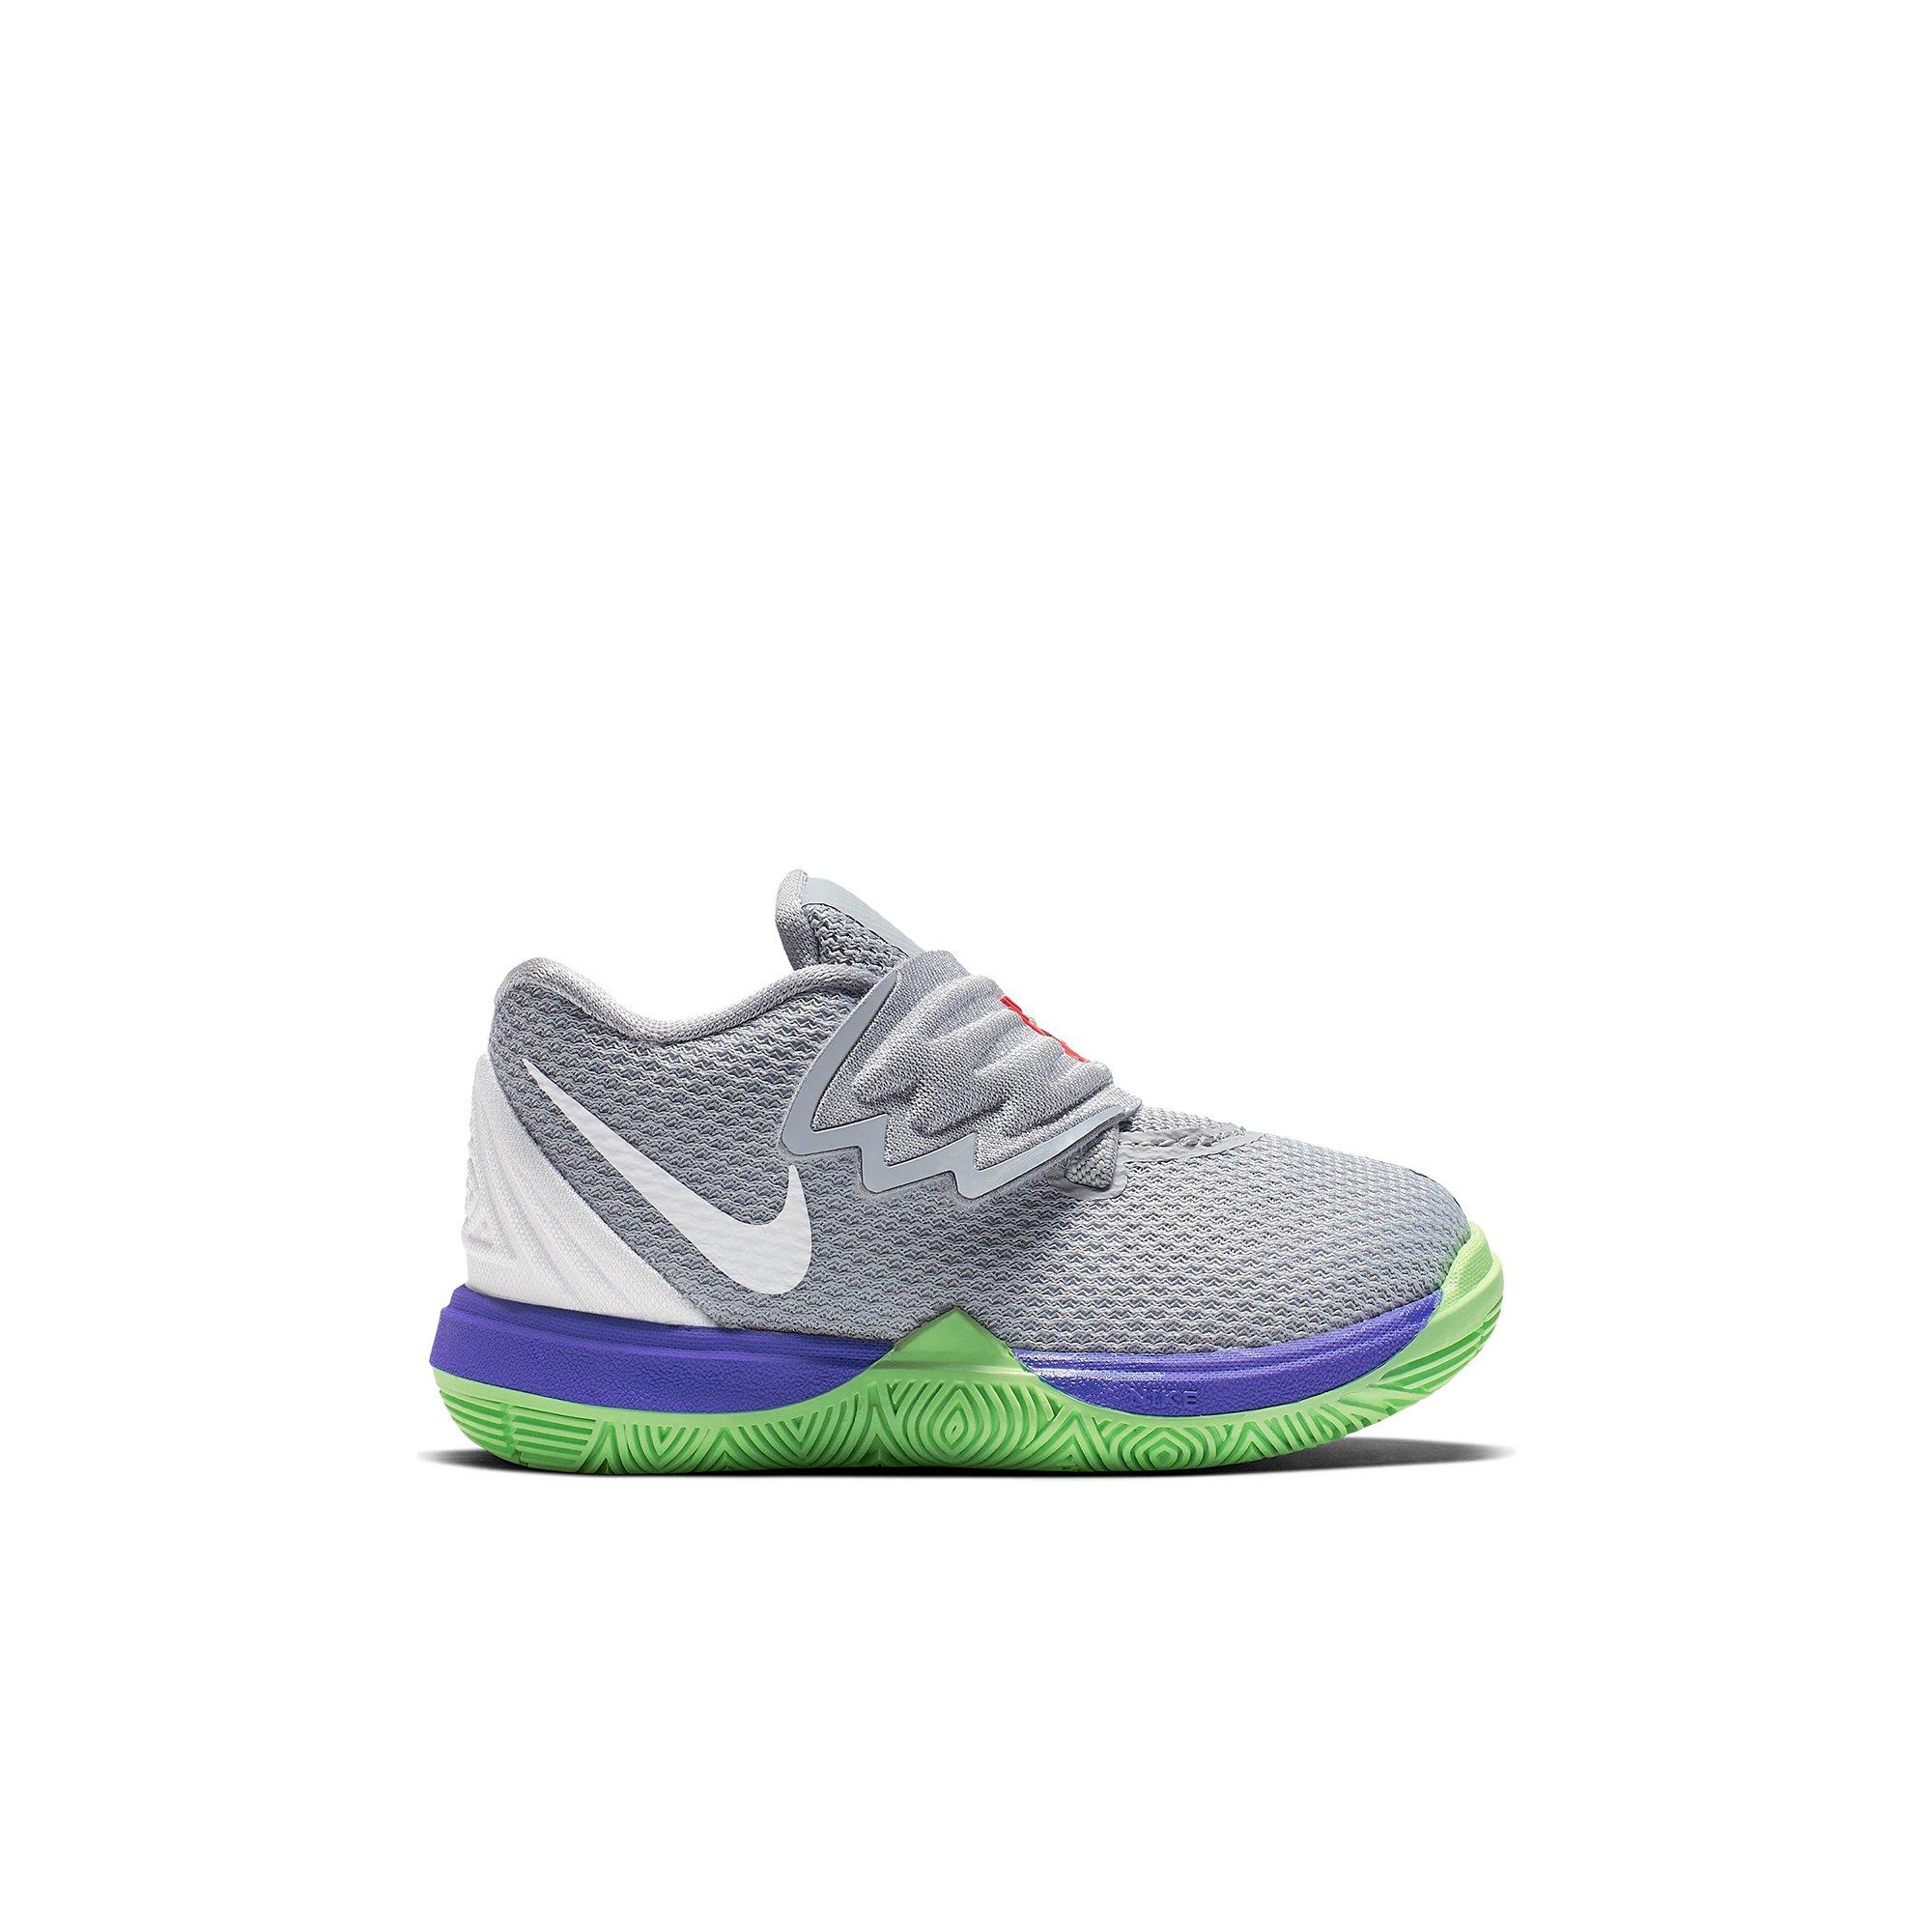 Nike Kids GS Kyrie 5 Basketball Shoe Sneakers Amazon.com